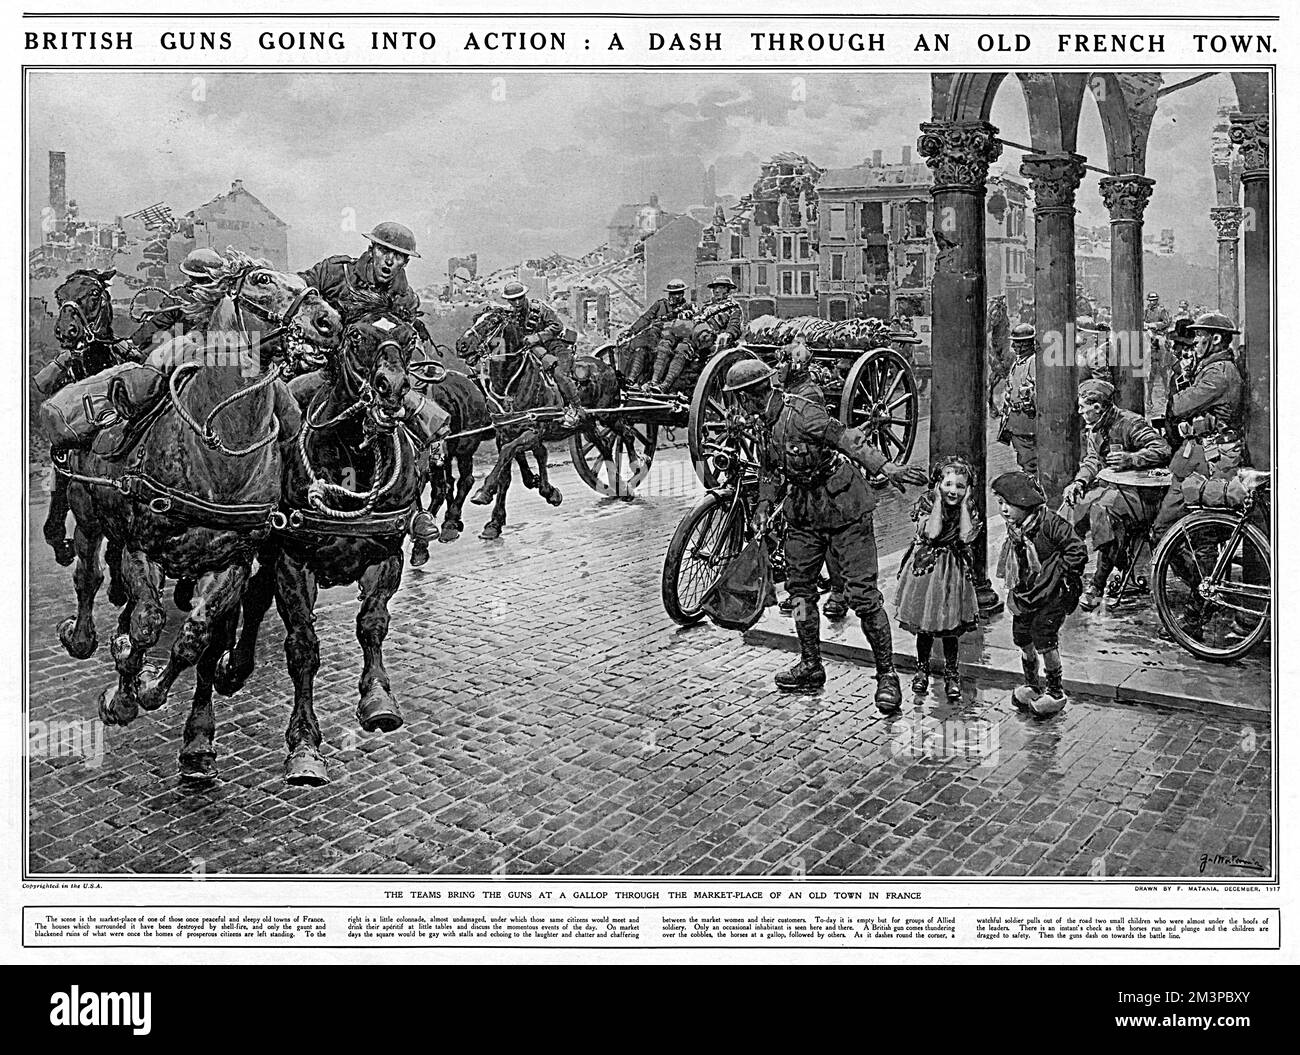 Ein britisches Artillerieblatt wird in einem Galopp durch den Marktplatz einer französischen Stadt gedrängt, der von Gebäuden umgeben ist, die an Muscheln beschädigt wurden. Ein wachsamer Soldat sorgt dafür, dass die beiden Kinder rechts nicht in den Pfad der Pferde hinaustreten. Dezember 1917 Stockfoto